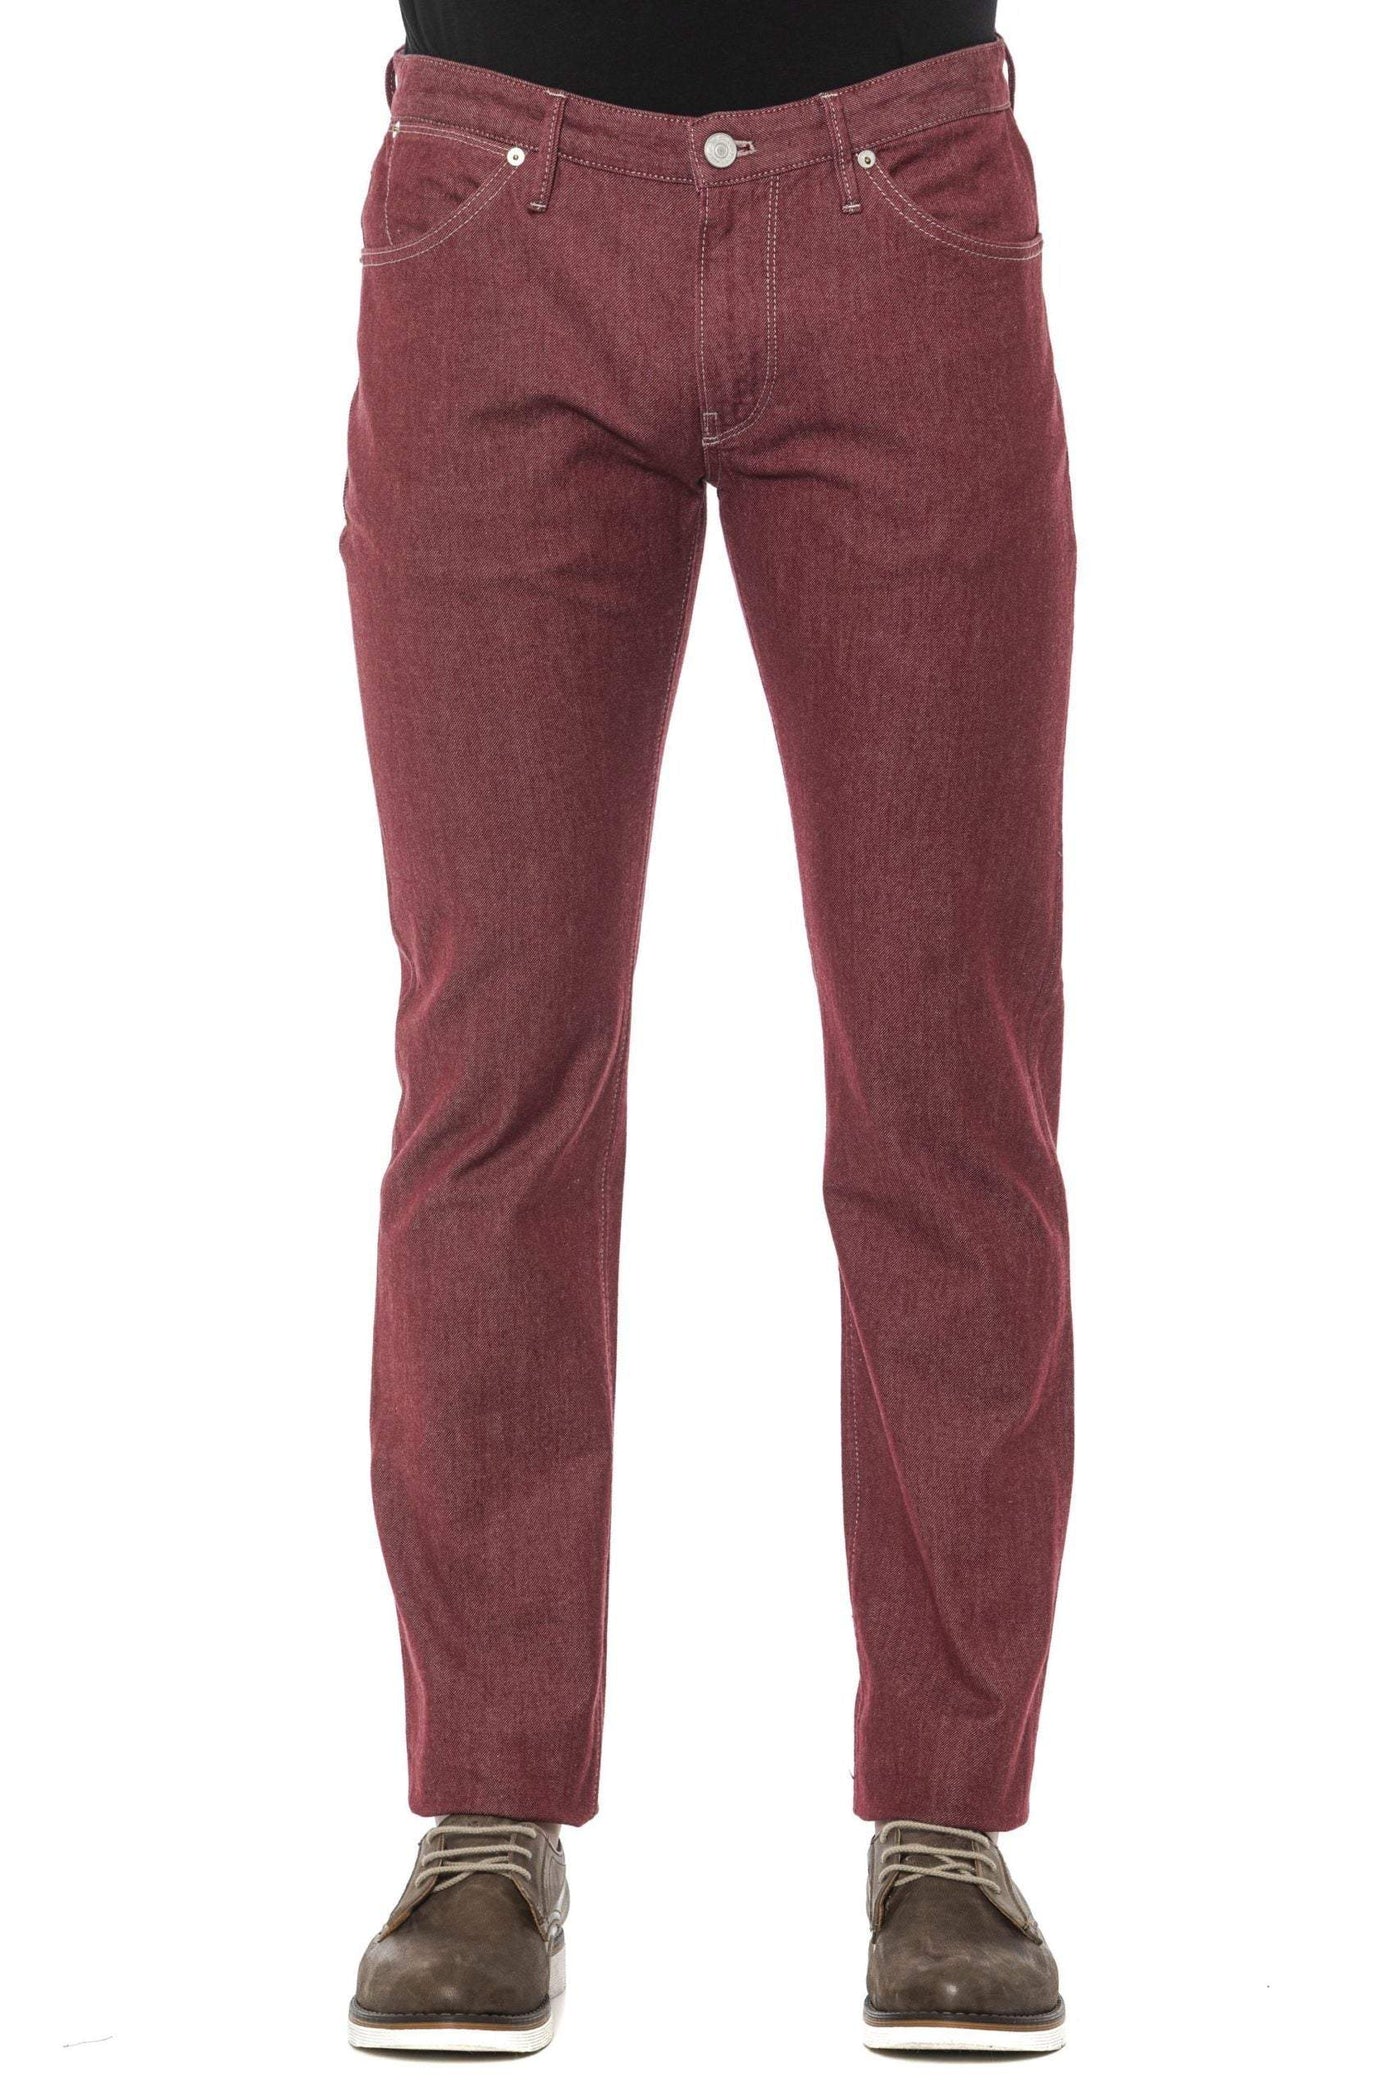 PT Torino Burgundy Cotton Jeans & Pant #men, Burgundy, feed-1, Jeans & Pants - Men - Clothing, PT Torino, W35, W36, W38 at SEYMAYKA